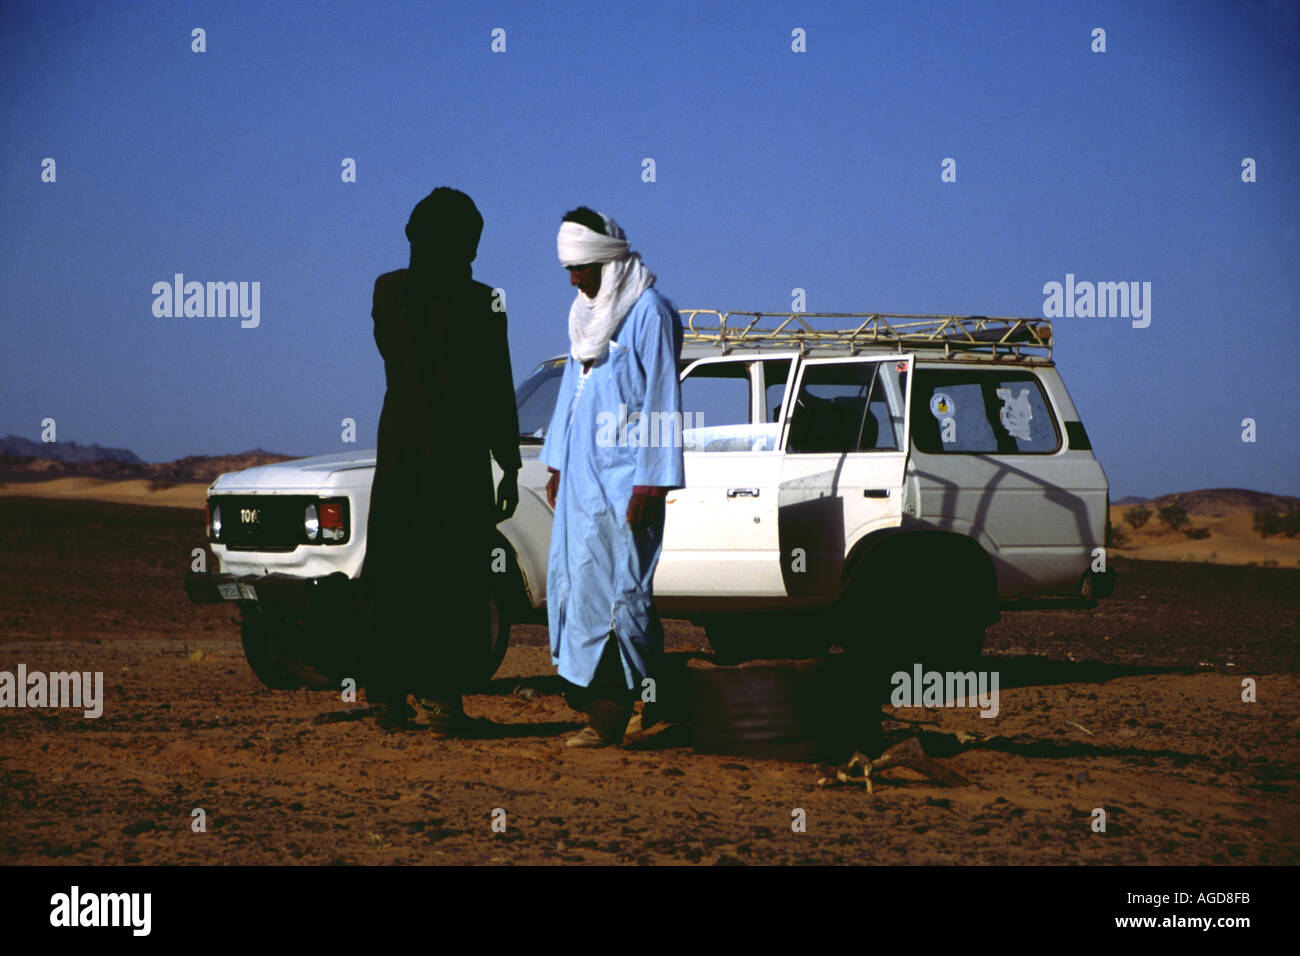 Libyen Beduinen mit Jeep in der Wüste Libya beduins with a jeep in the desert Stock Photo